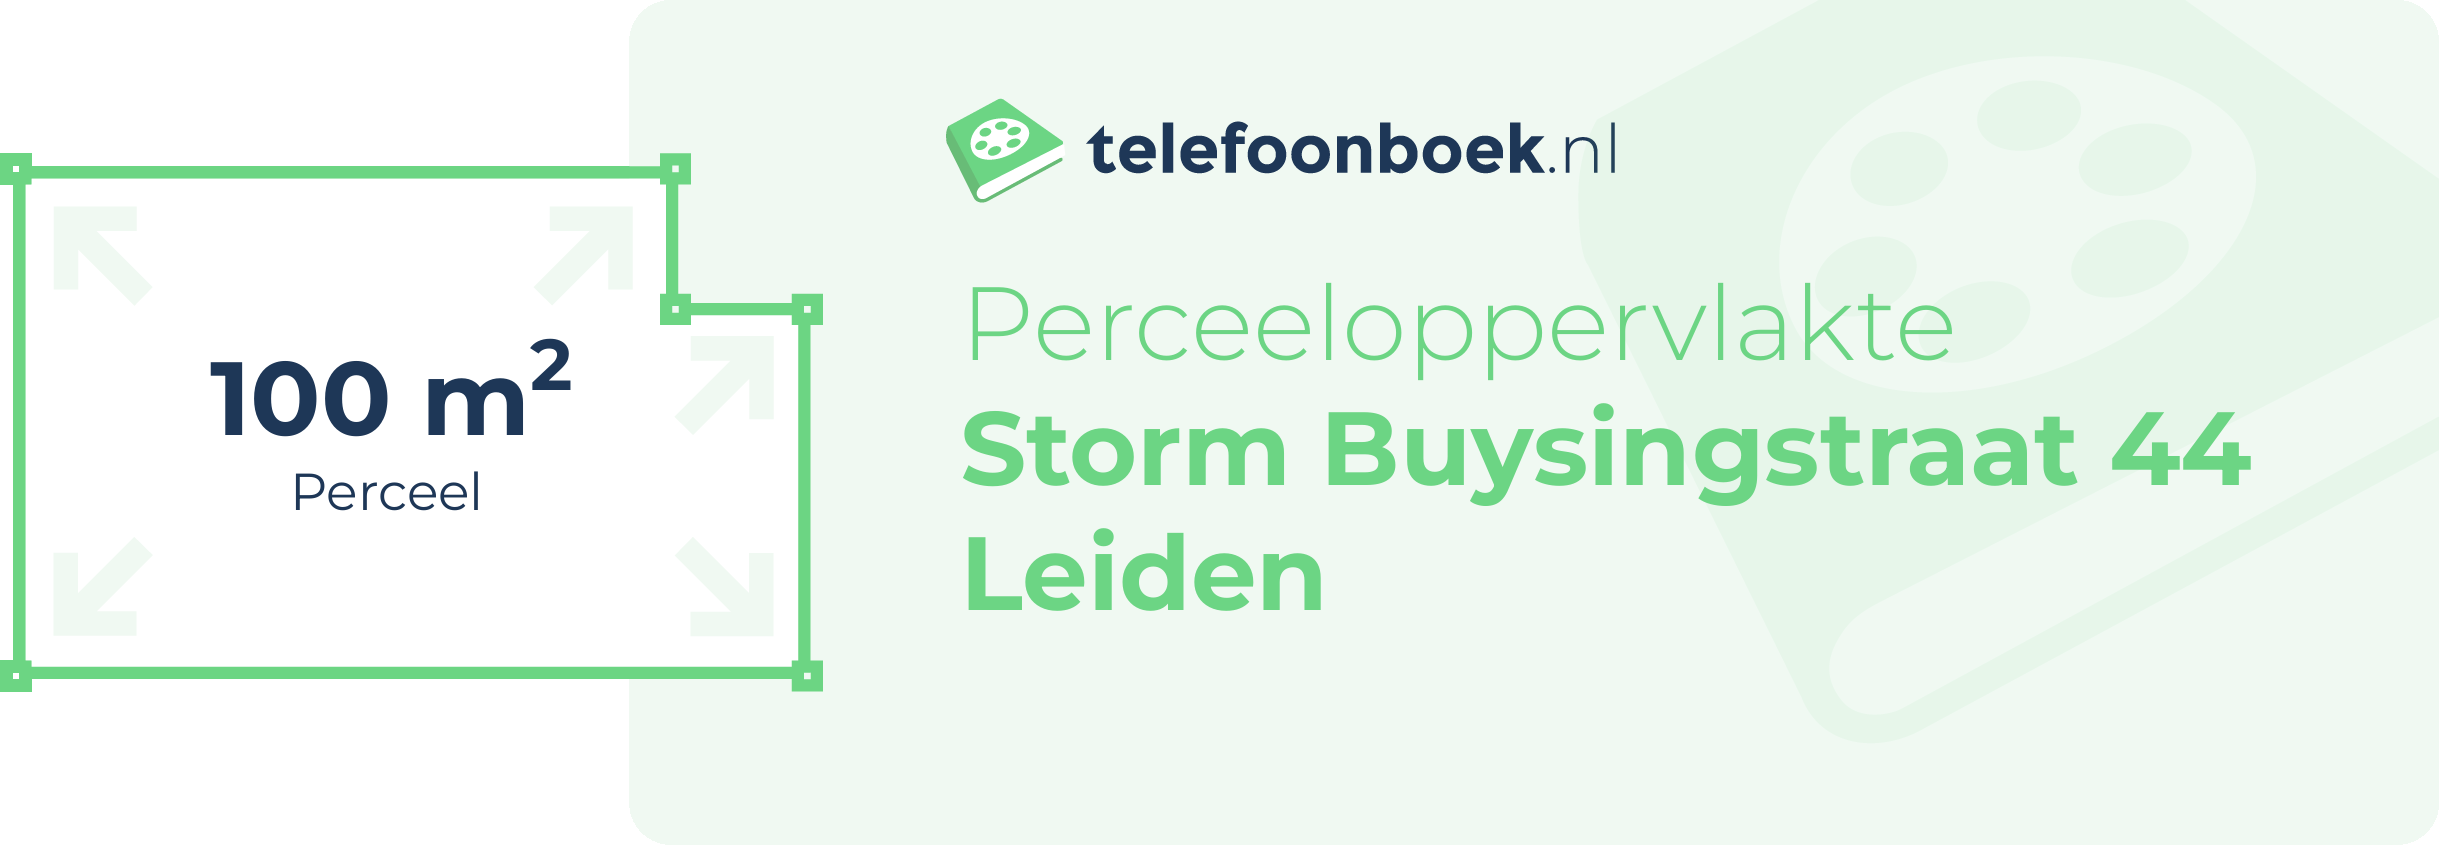 Perceeloppervlakte Storm Buysingstraat 44 Leiden